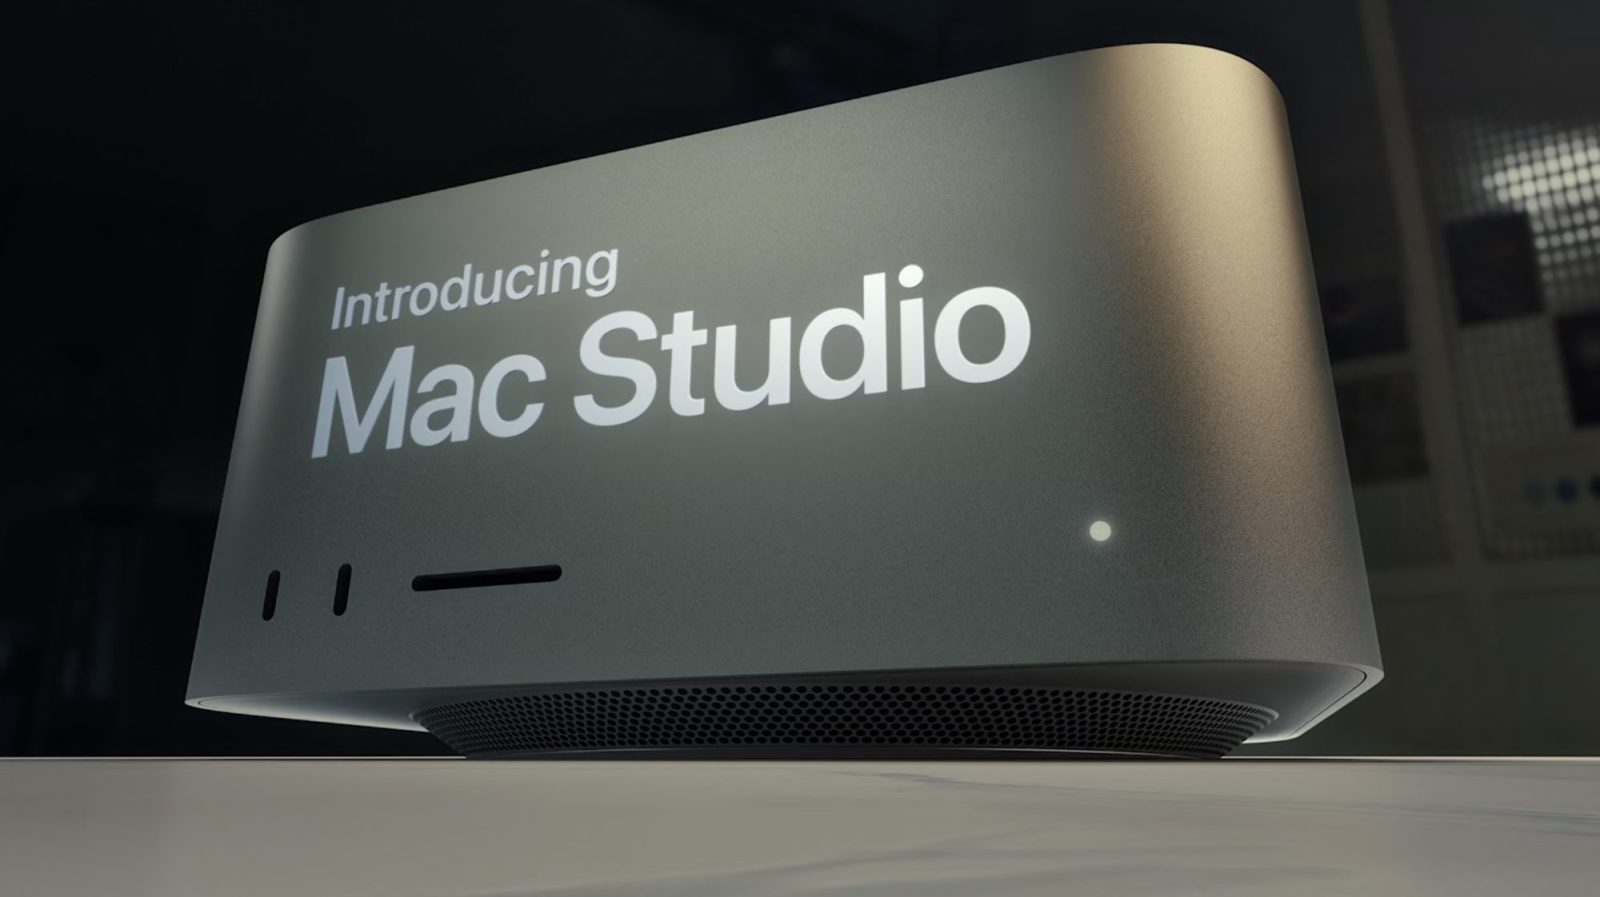 Mac Studio features